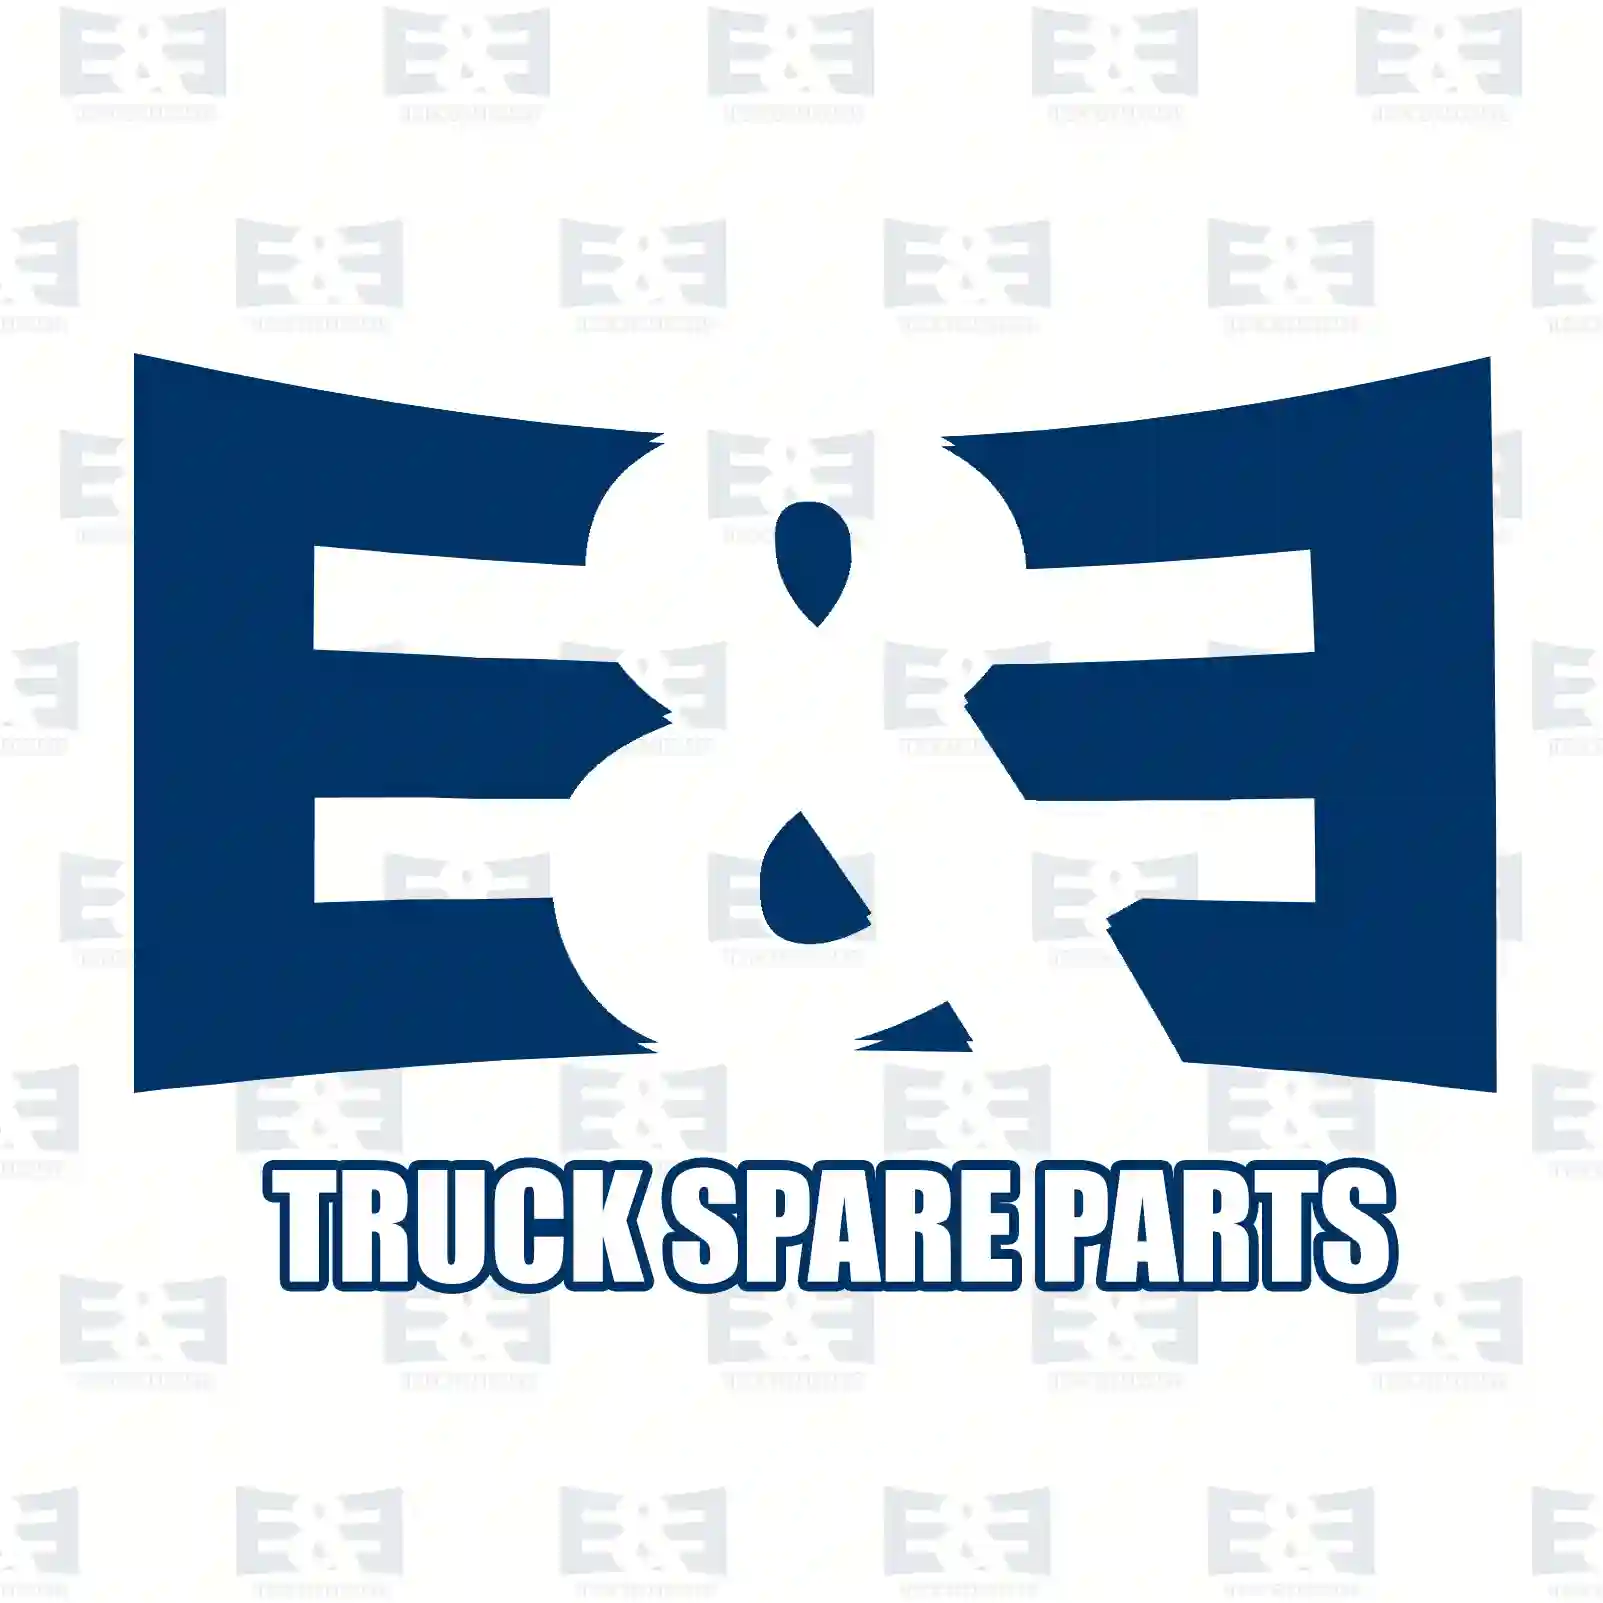 Screw, 2E2276040, 000933010087, 902042, 955318, 970948, ||  2E2276040 E&E Truck Spare Parts | Truck Spare Parts, Auotomotive Spare Parts Screw, 2E2276040, 000933010087, 902042, 955318, 970948, ||  2E2276040 E&E Truck Spare Parts | Truck Spare Parts, Auotomotive Spare Parts